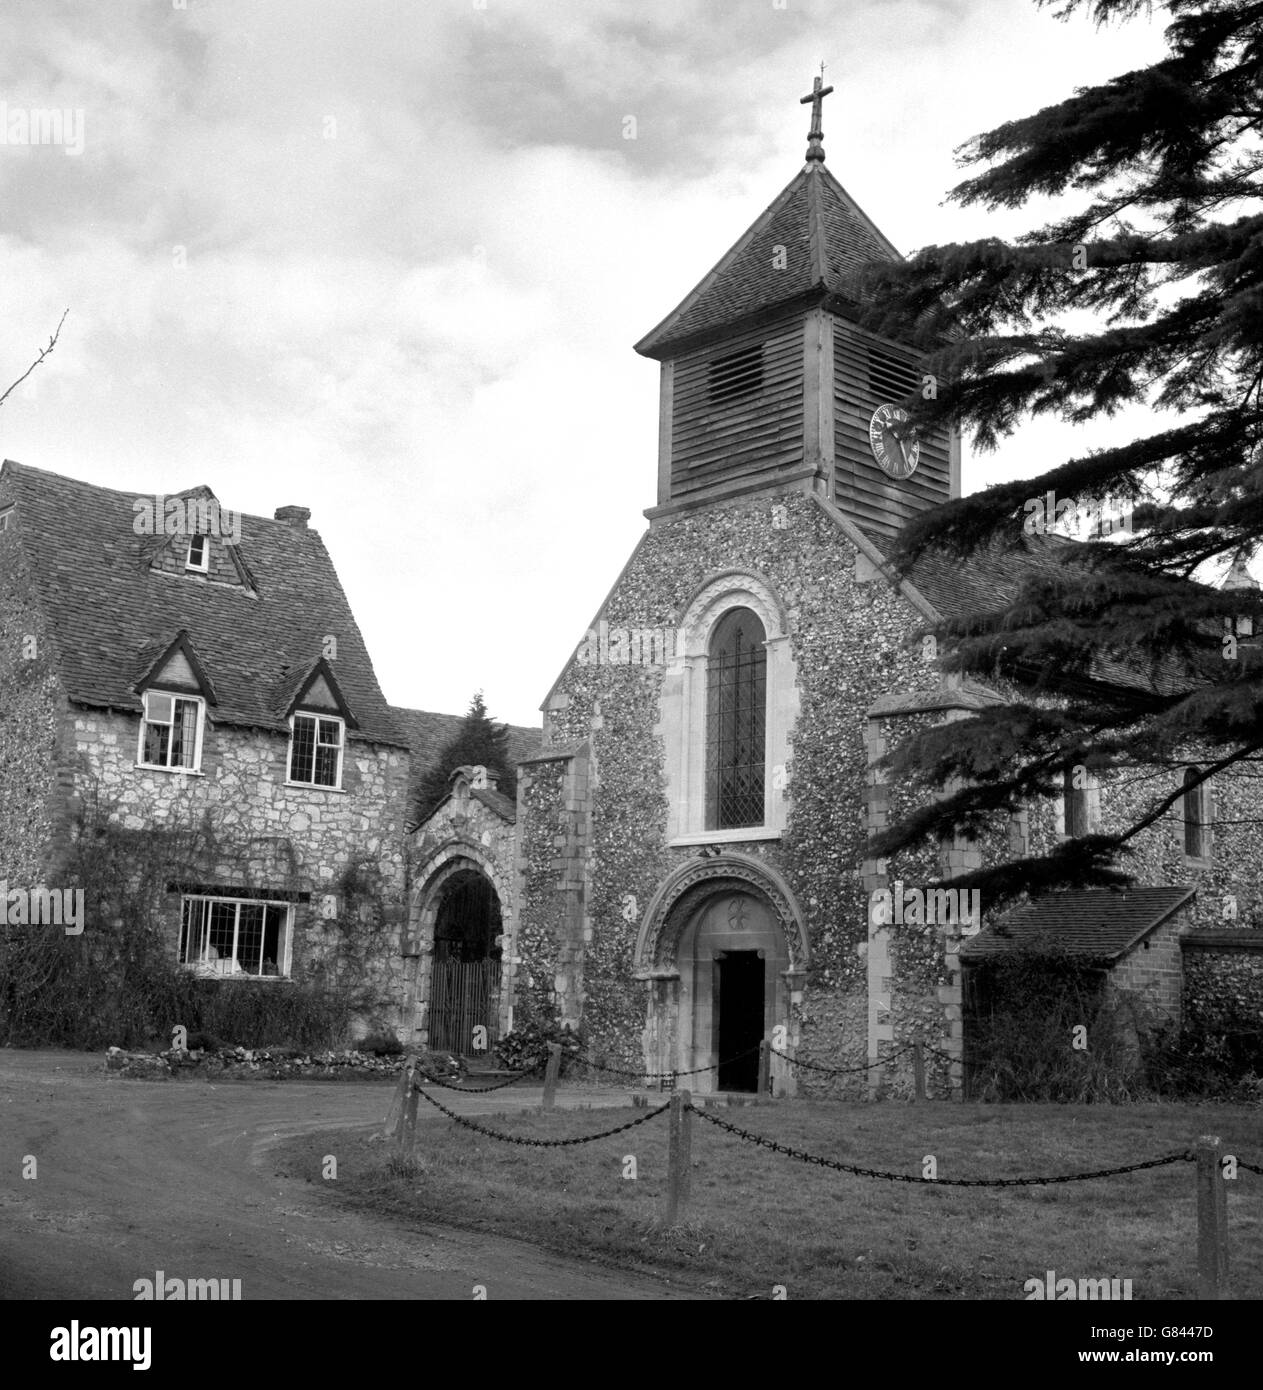 Il fronte nord dell'antica chiesa di Santa Maria la Vergine a Hurley, Berkshire. Anche se prevalentemente normanna, vi sono prove di lavori sassoni nell'edificio. Foto Stock